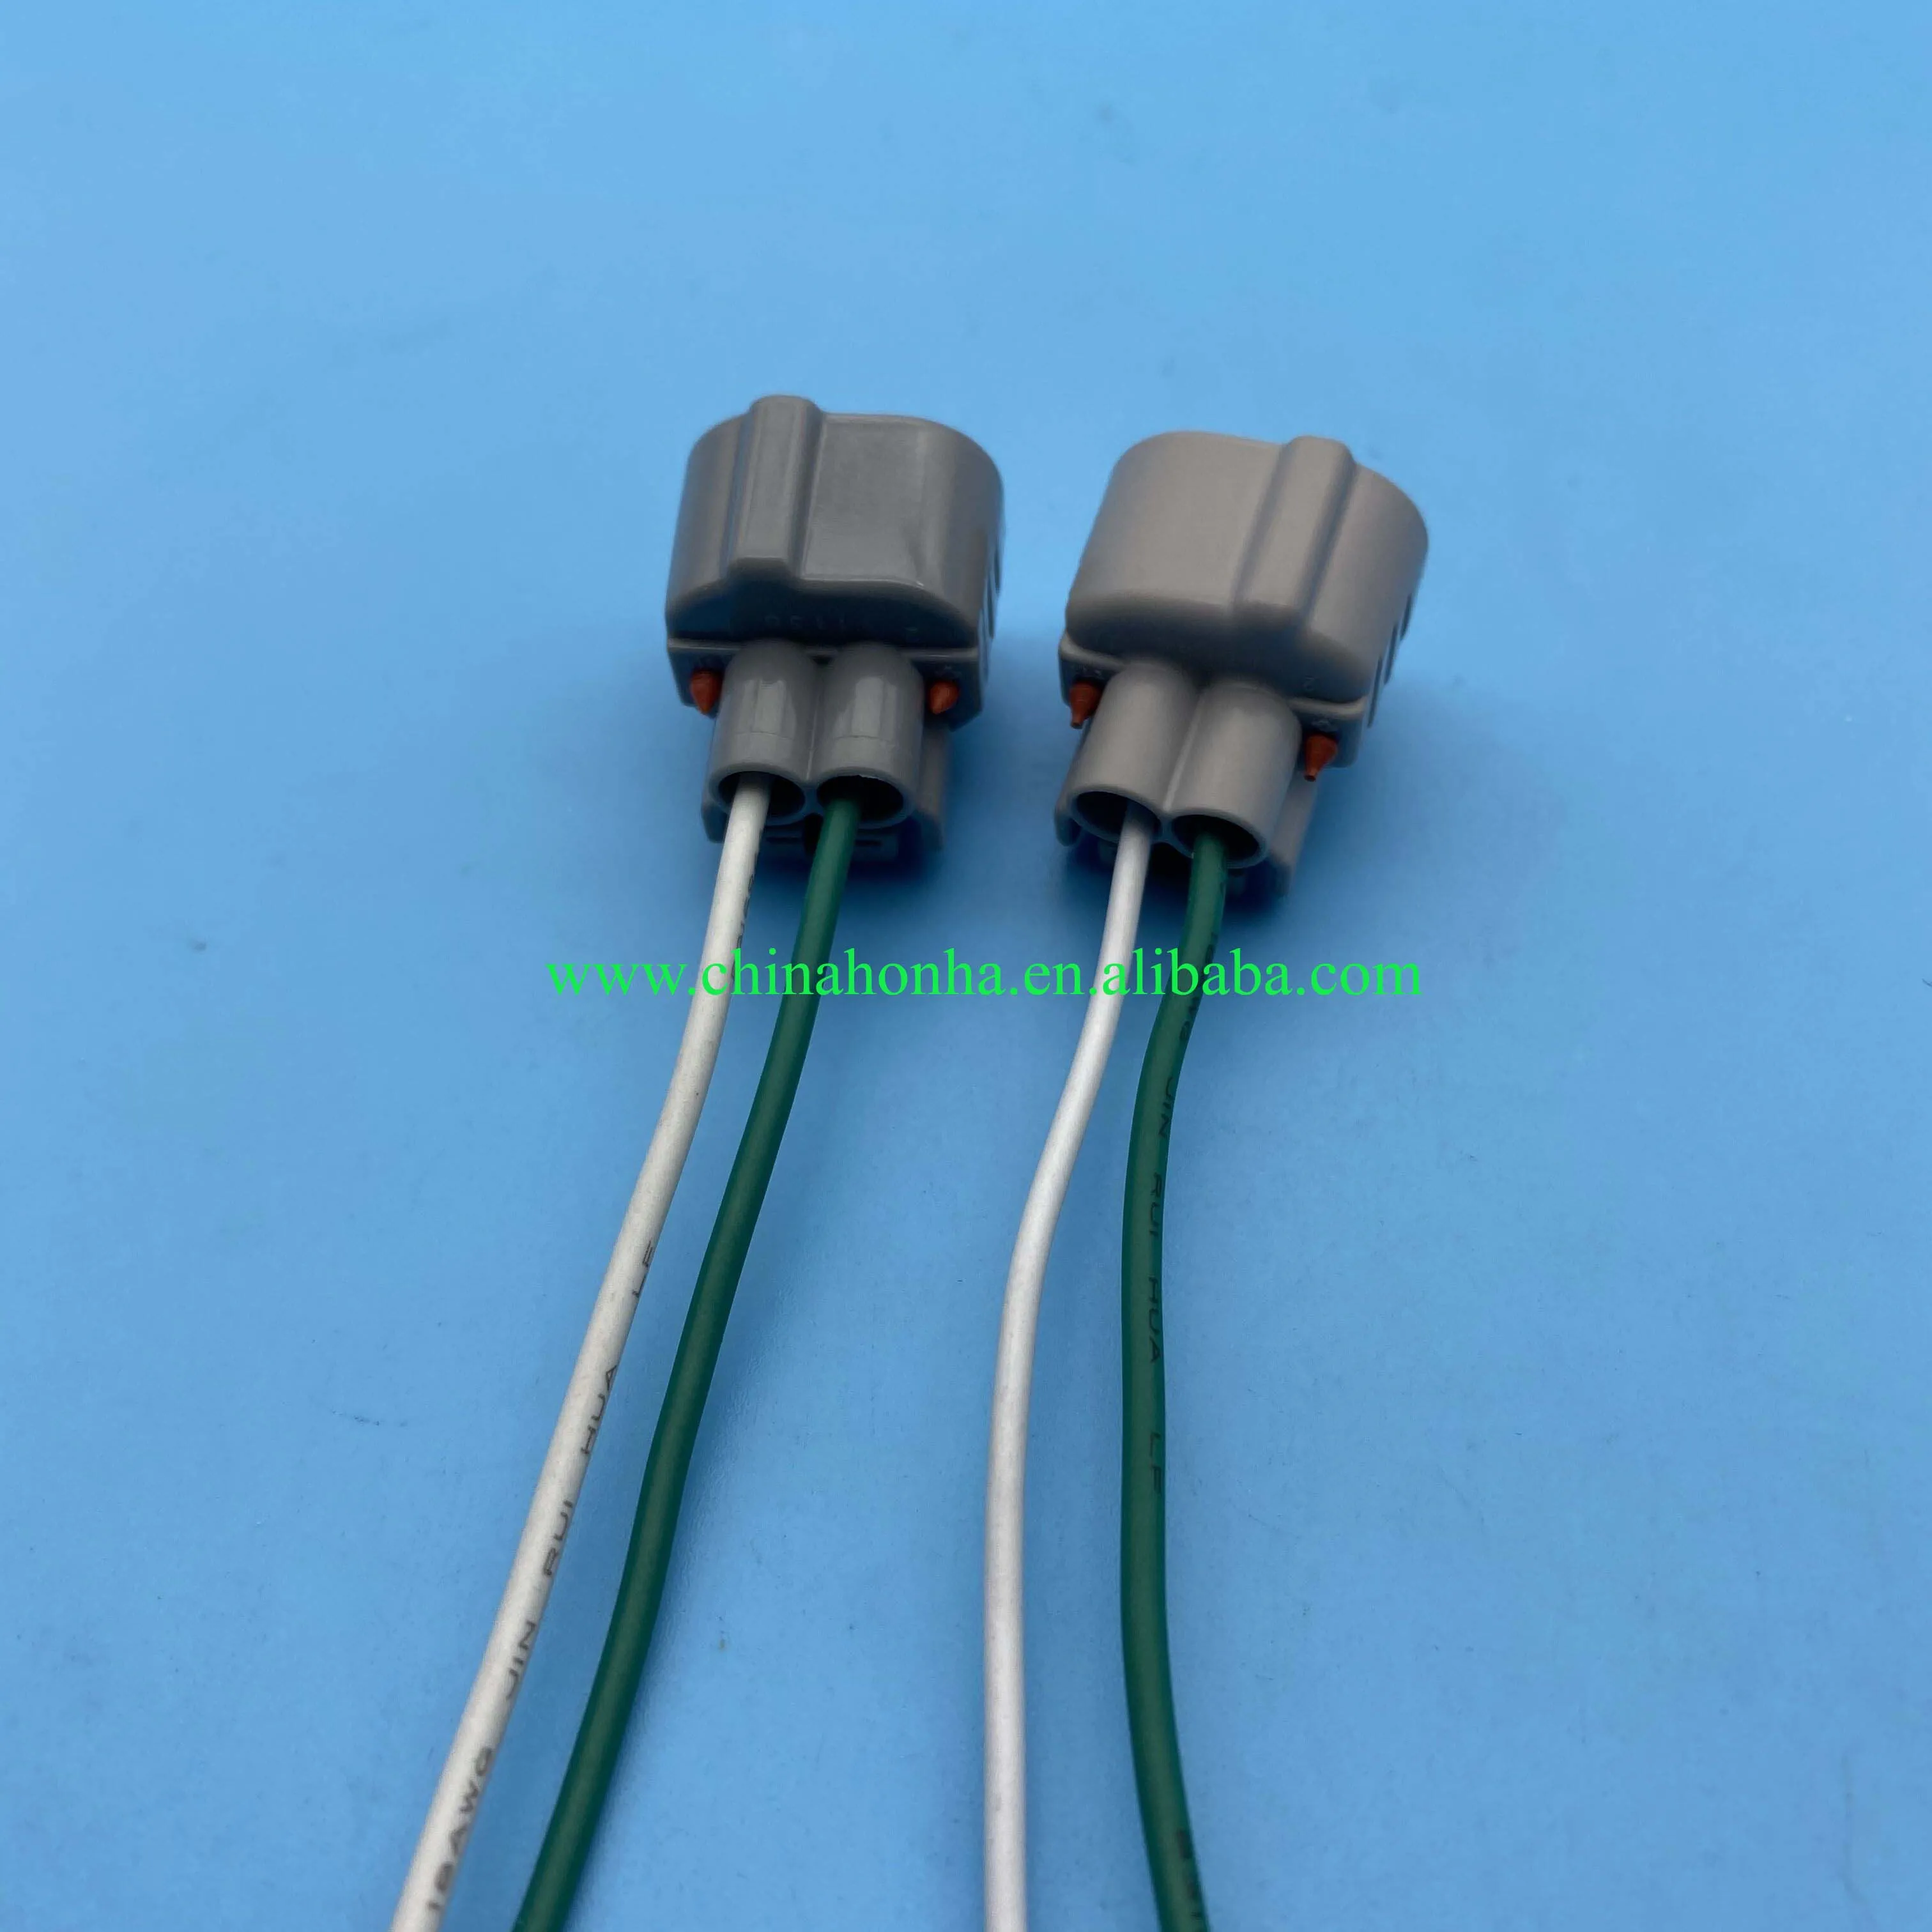 2-Pin Automotive Elektrische Connector Links En Rechts Slots 90980-11156 90980-11149